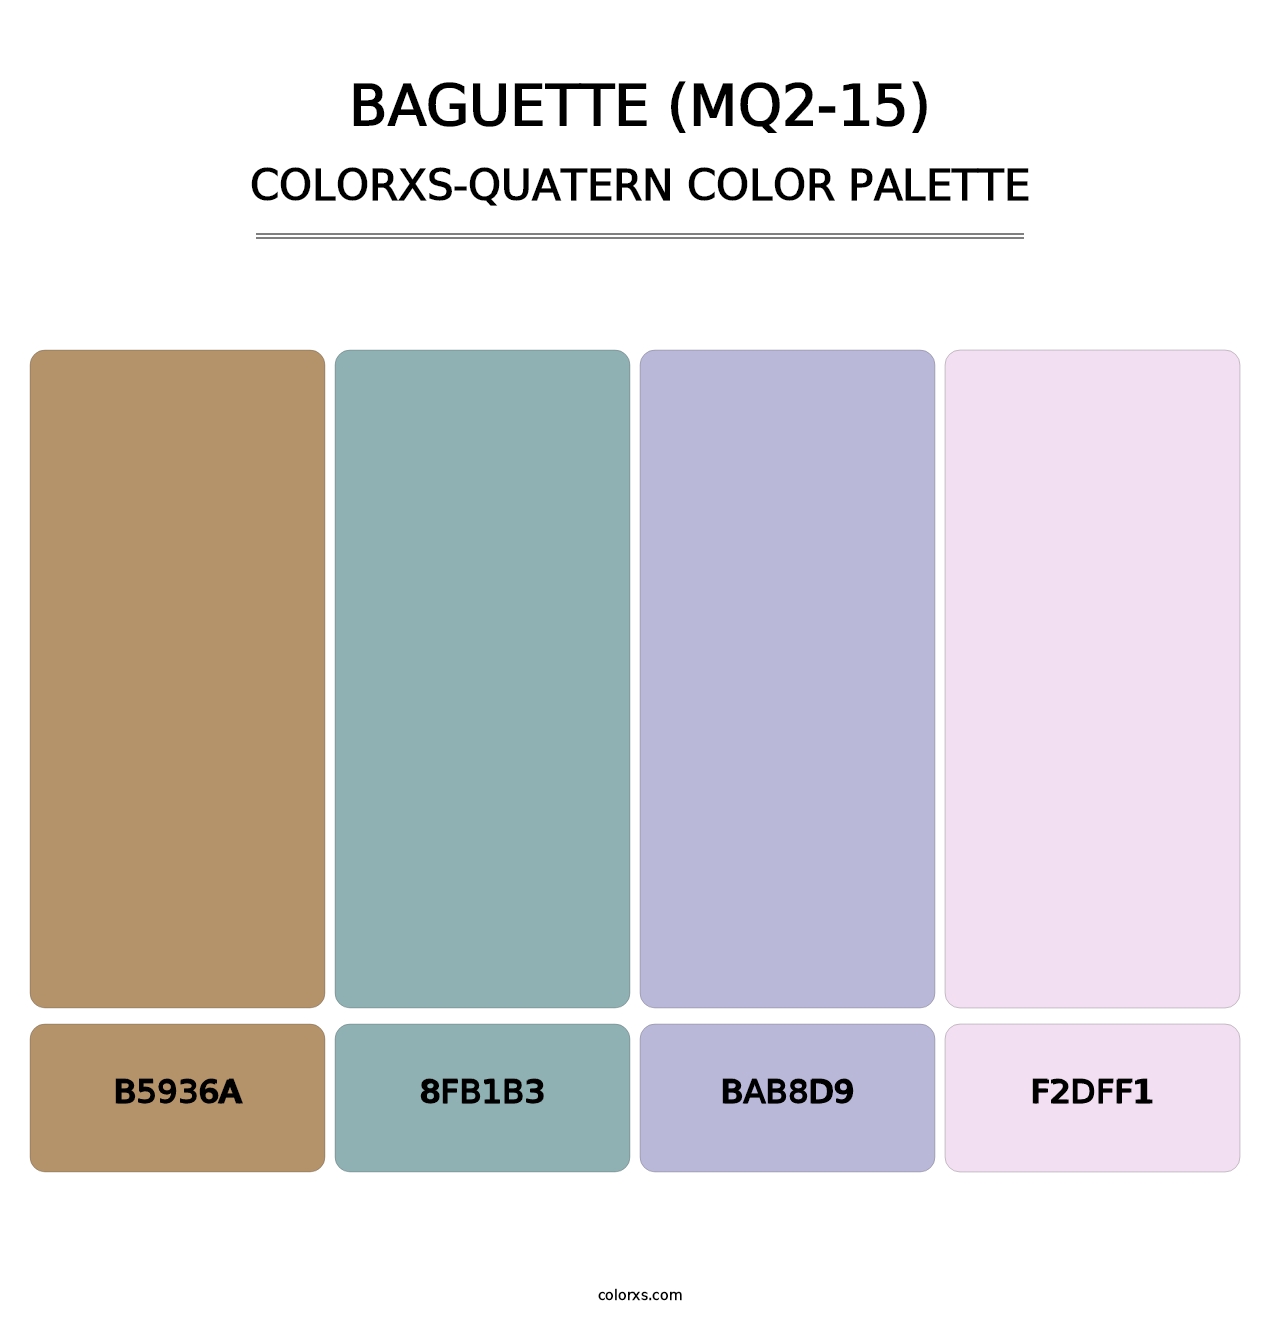 Baguette (MQ2-15) - Colorxs Quatern Palette